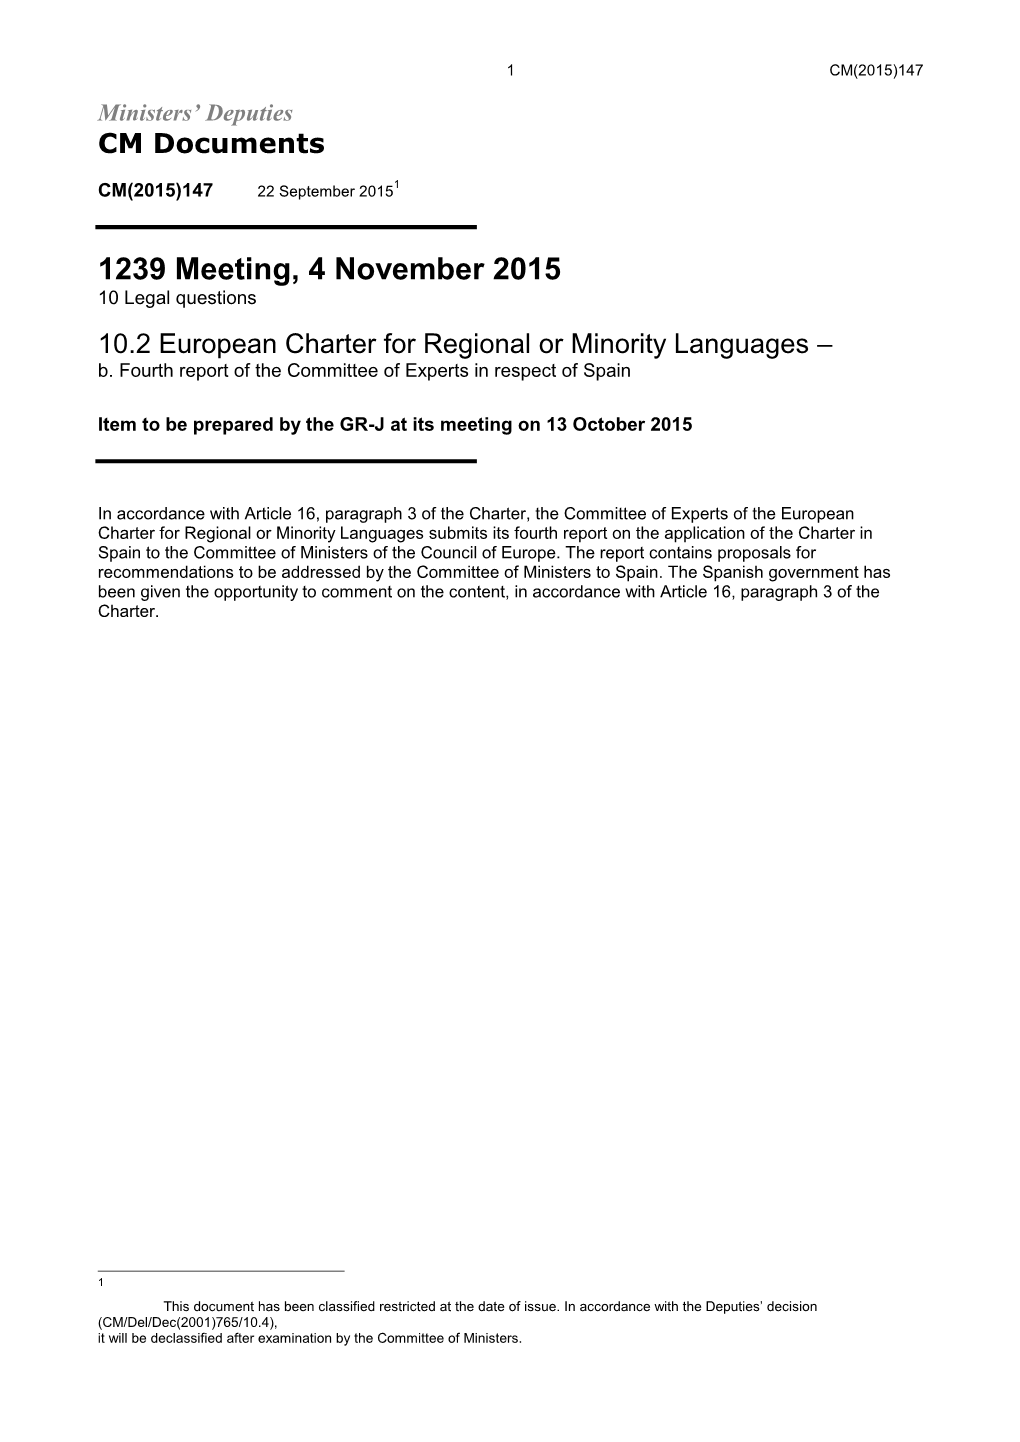 1239 Meeting, 4 November 2015 10 Legal Questions